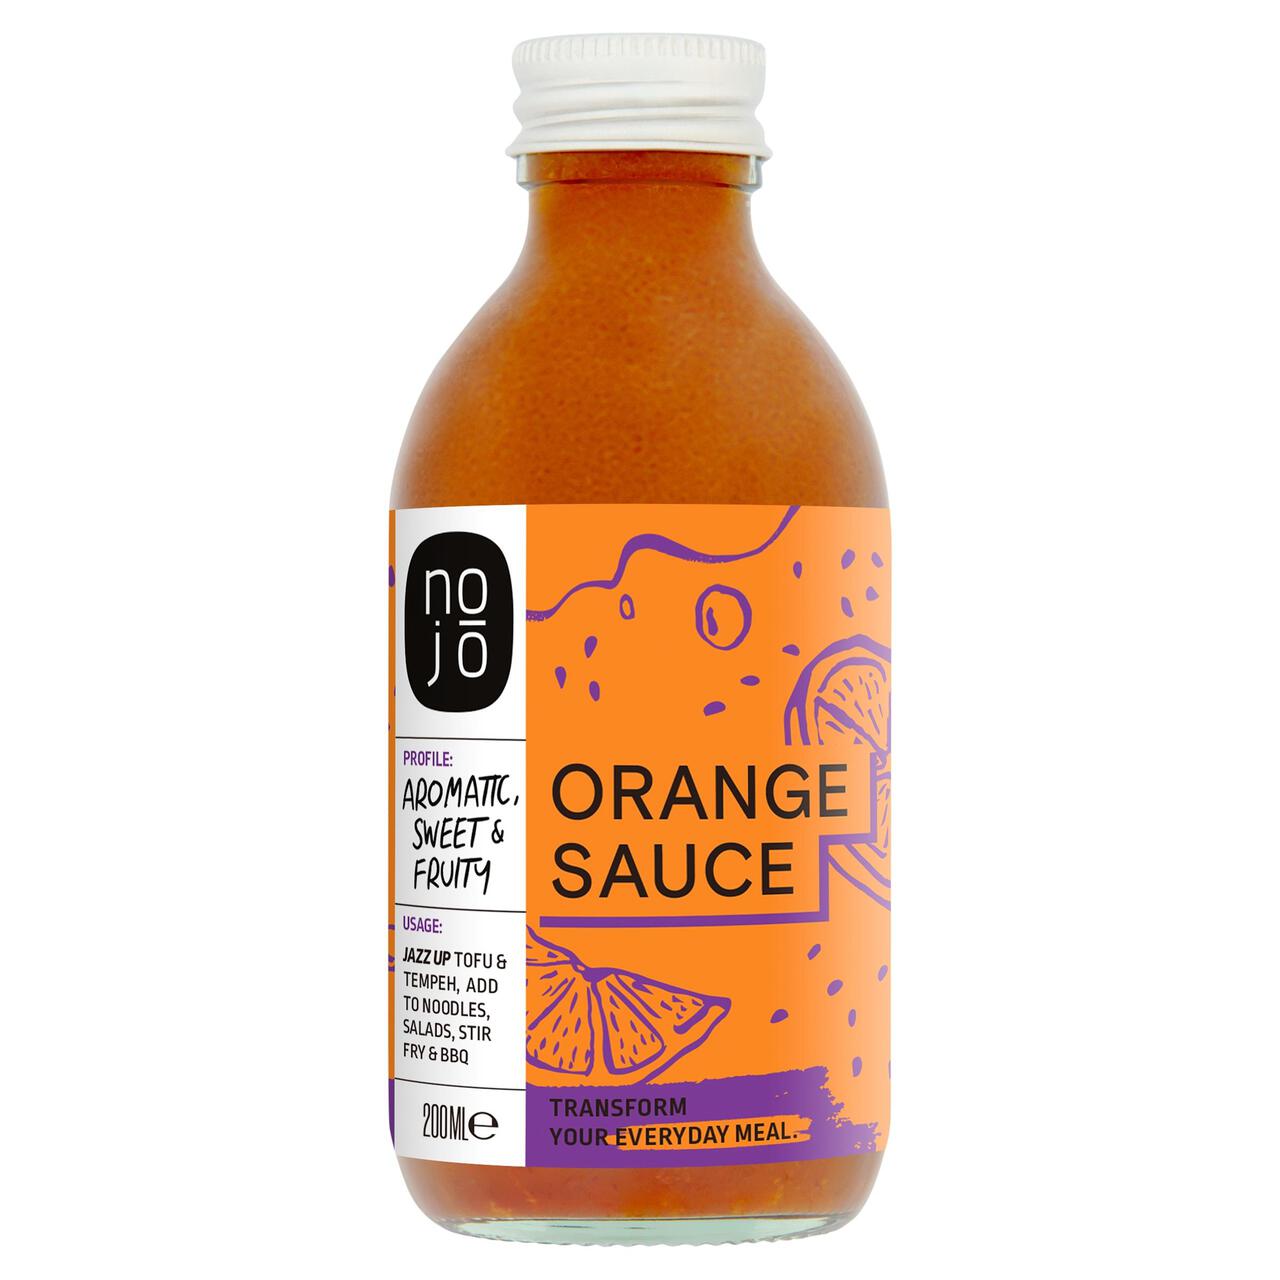 Nojo Orange Poke Sauce 200ml